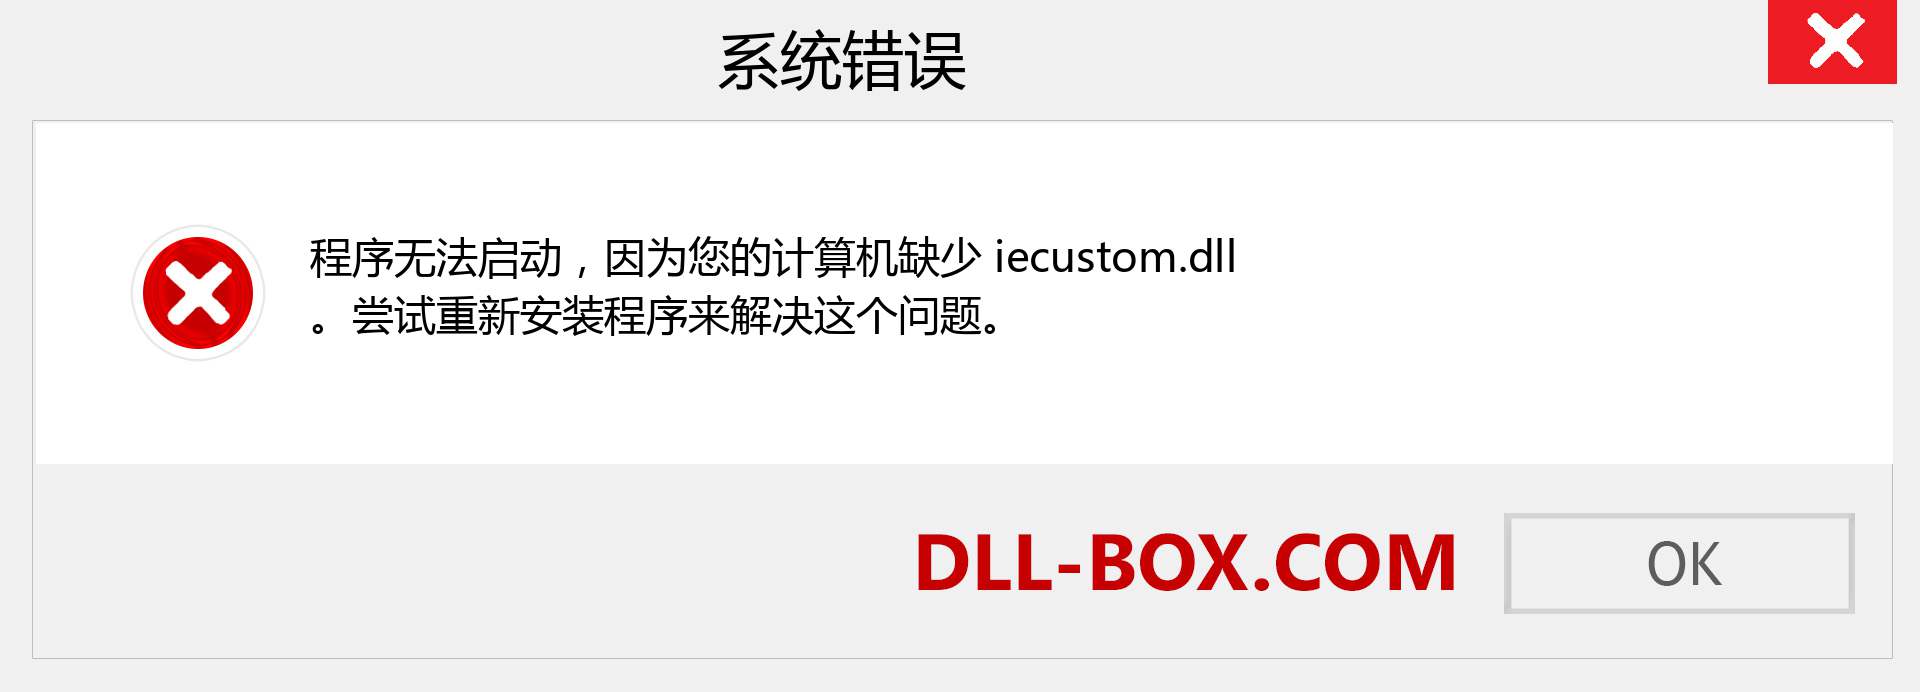 iecustom.dll 文件丢失？。 适用于 Windows 7、8、10 的下载 - 修复 Windows、照片、图像上的 iecustom dll 丢失错误